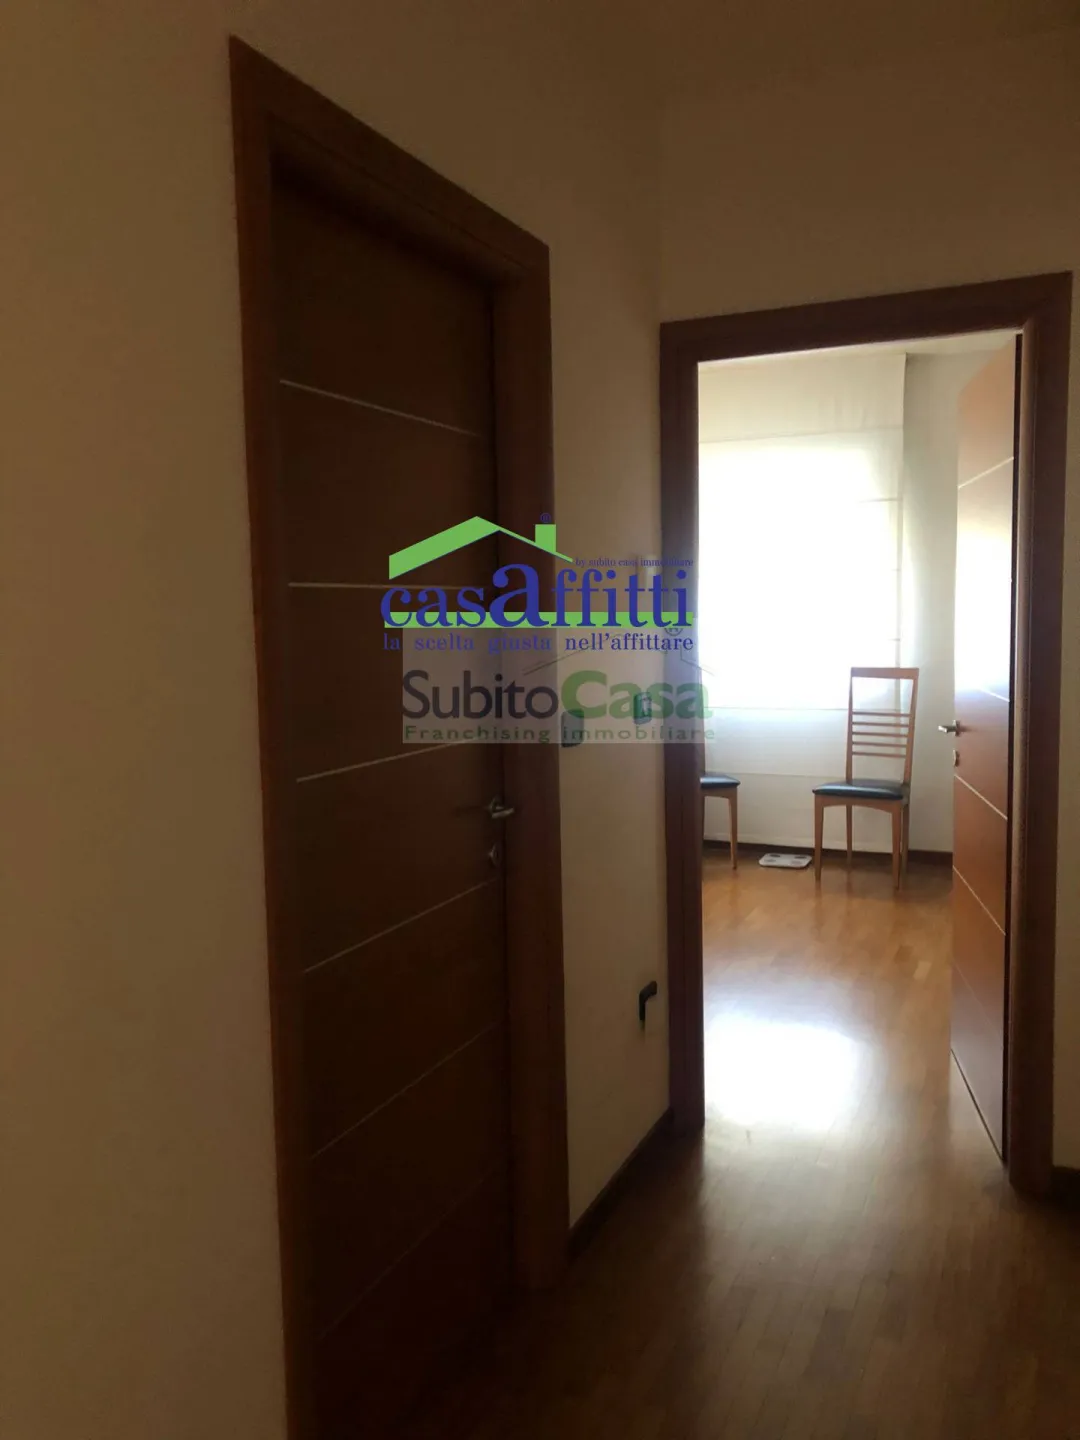 Immagine per Appartamento in vendita a San Giovanni Teatino Via Nenni